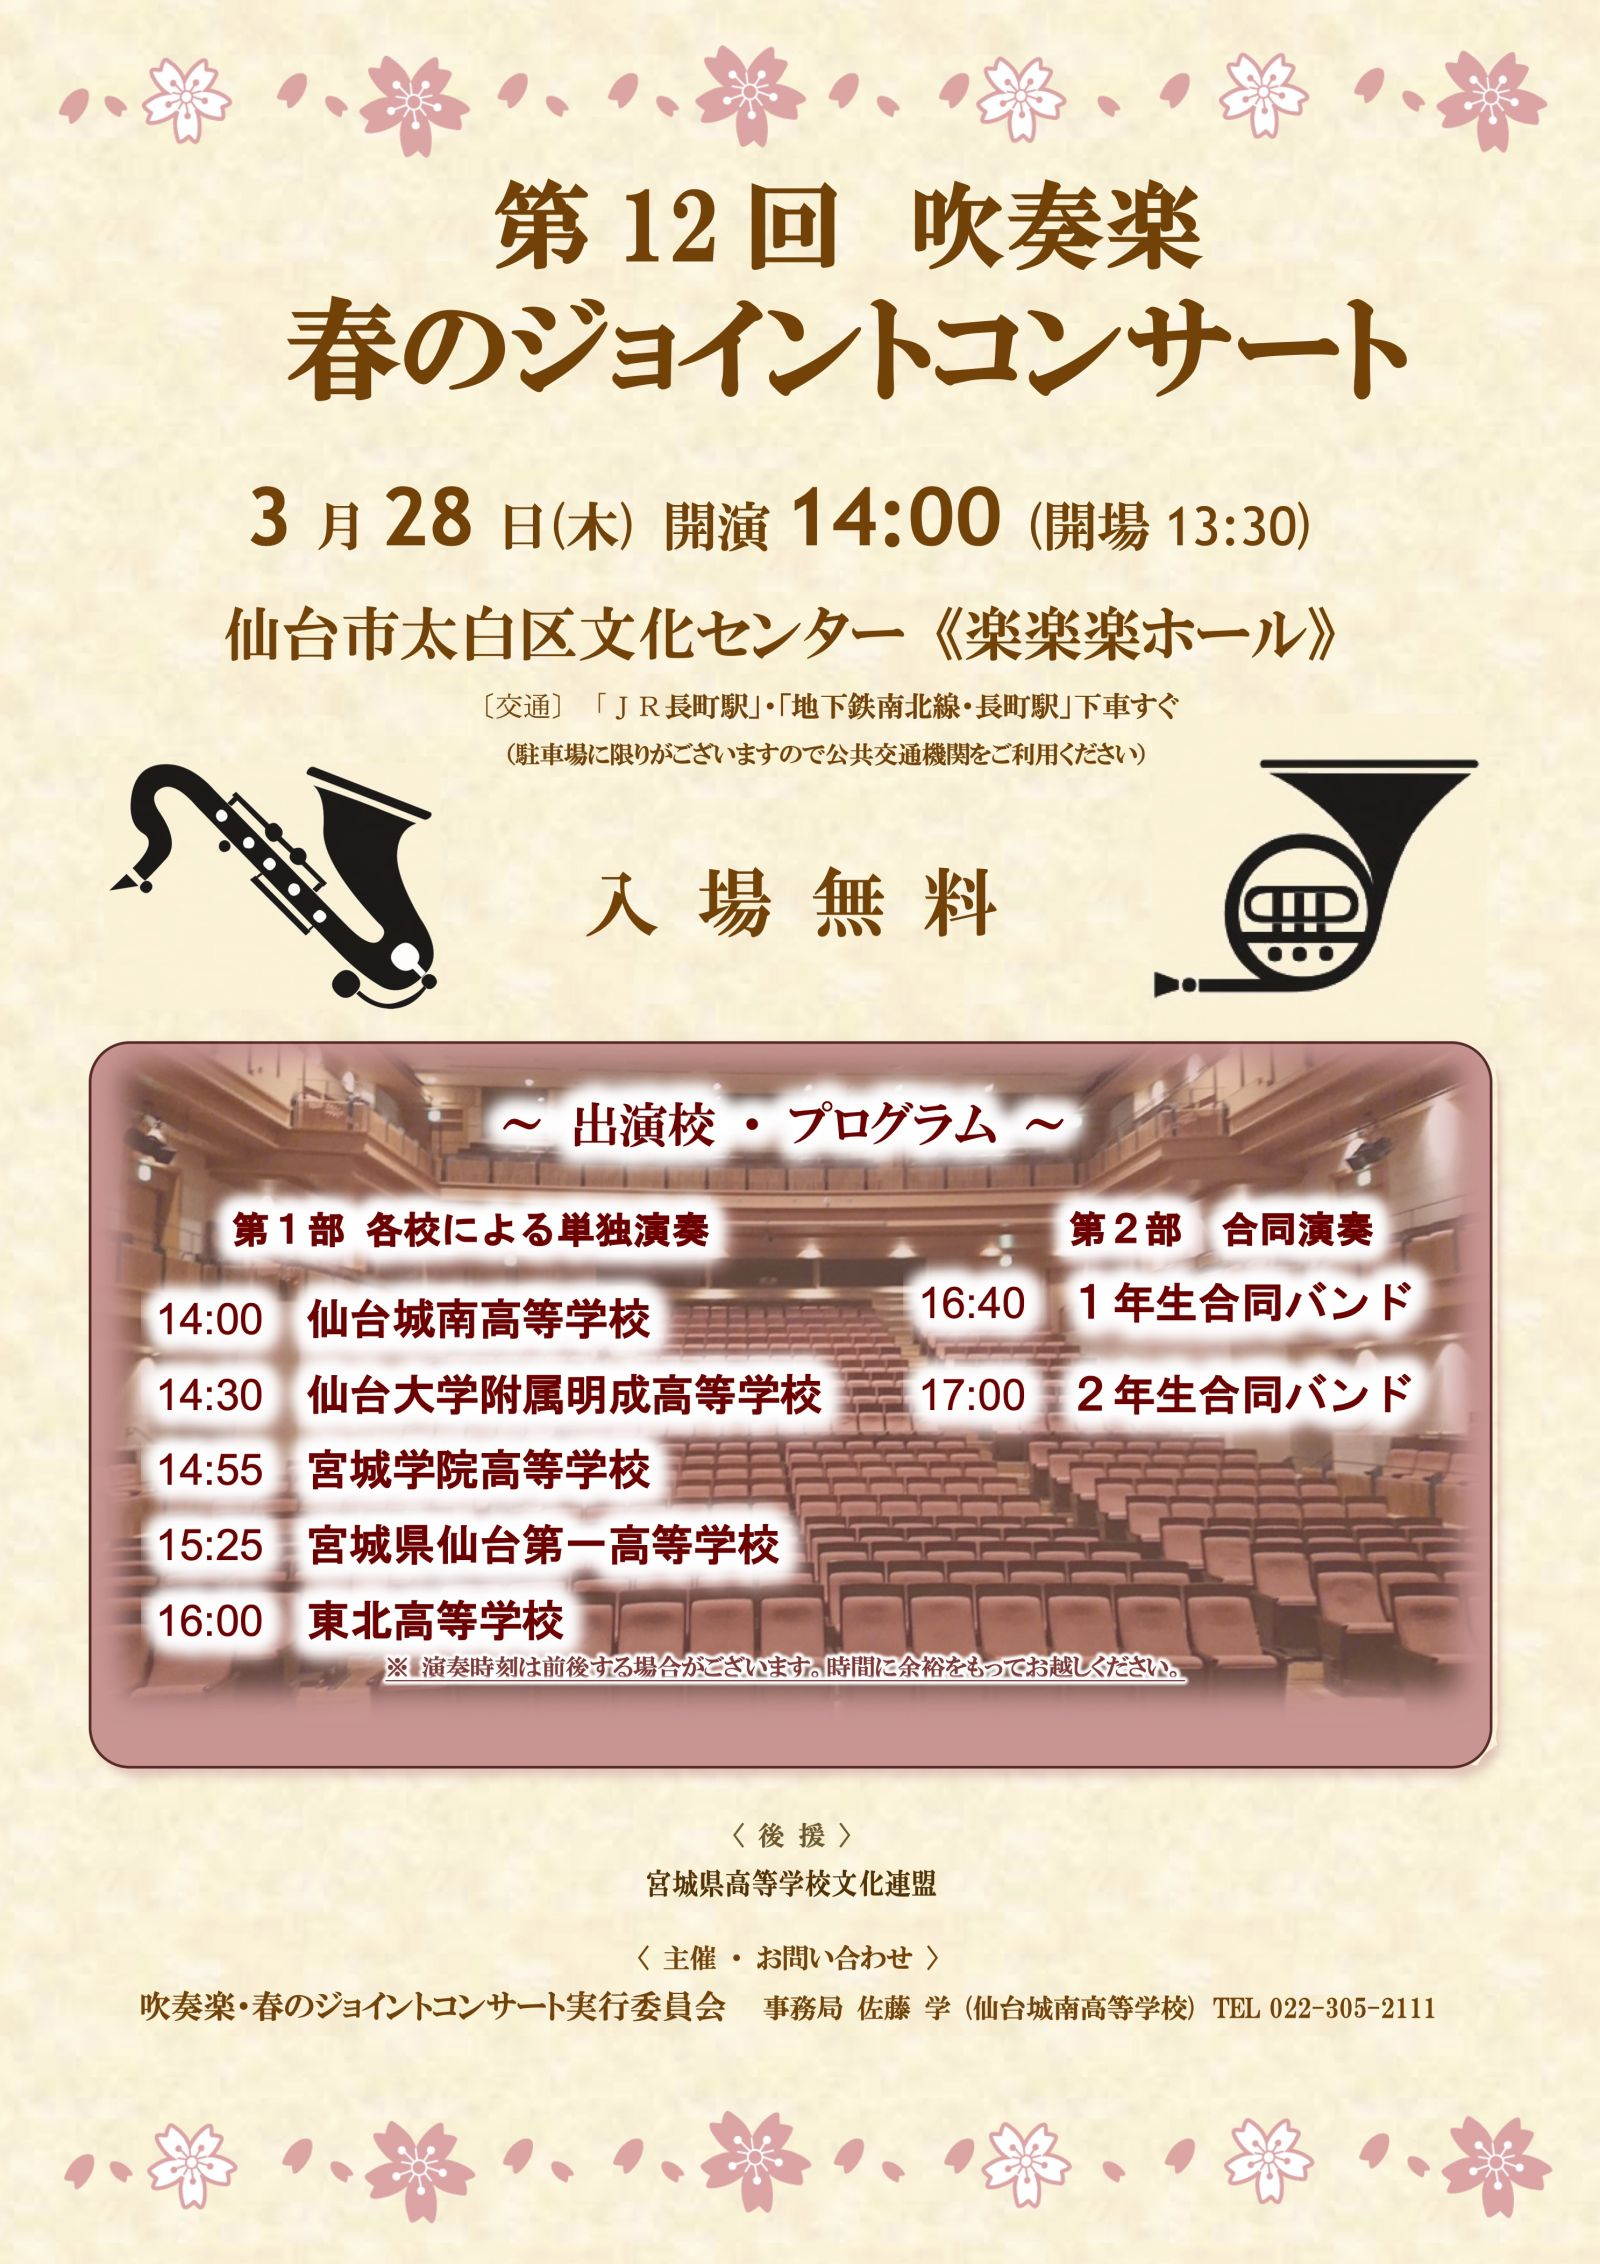 【吹奏楽部】3月28日(木) 「春のジョイントコンサート」に出演します。